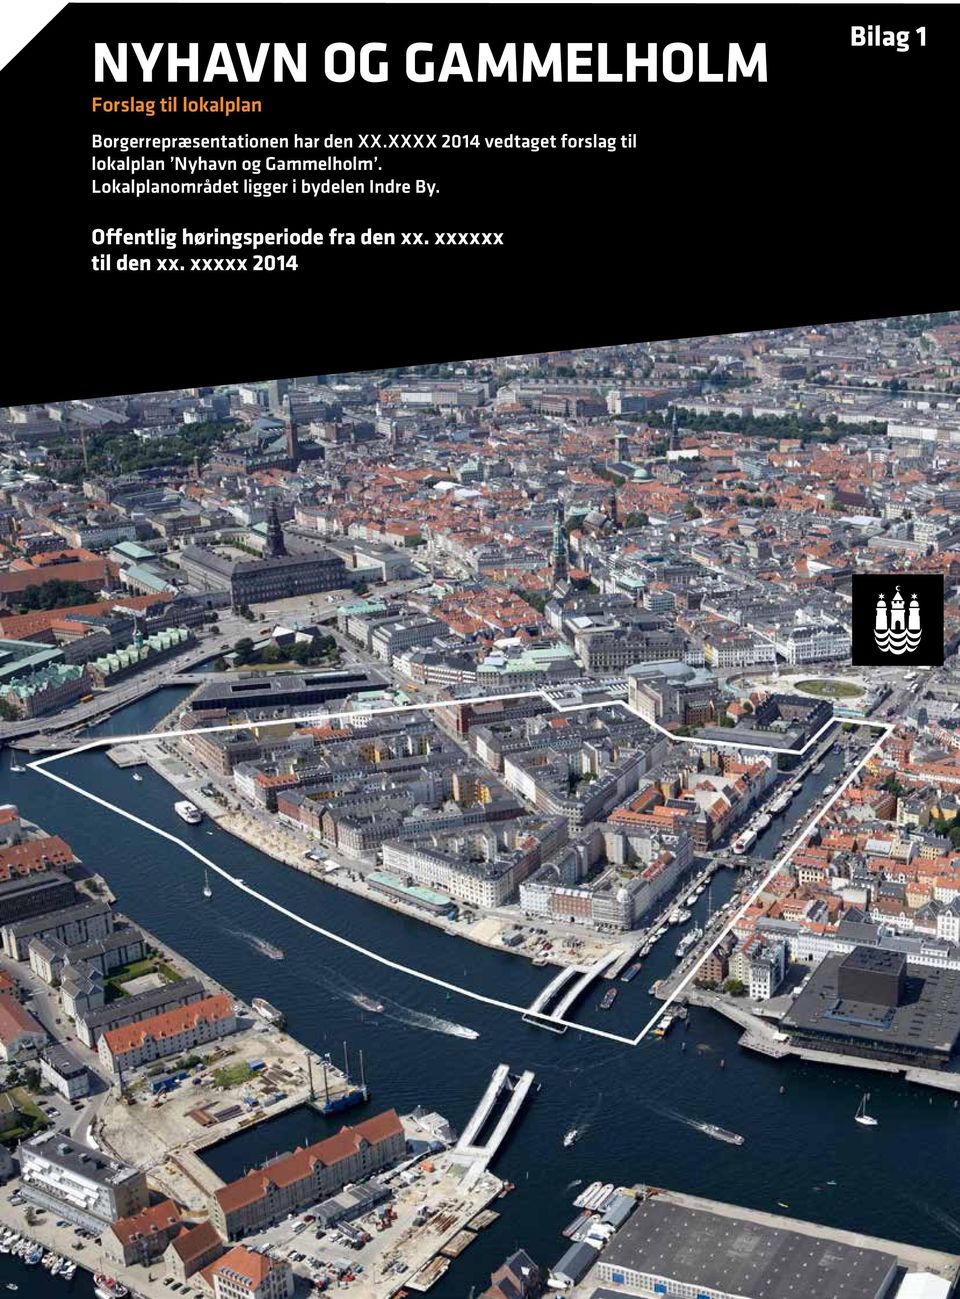 XXXX 2014 vedtaget forslag til lokalplan Nyhavn og Gammelholm.